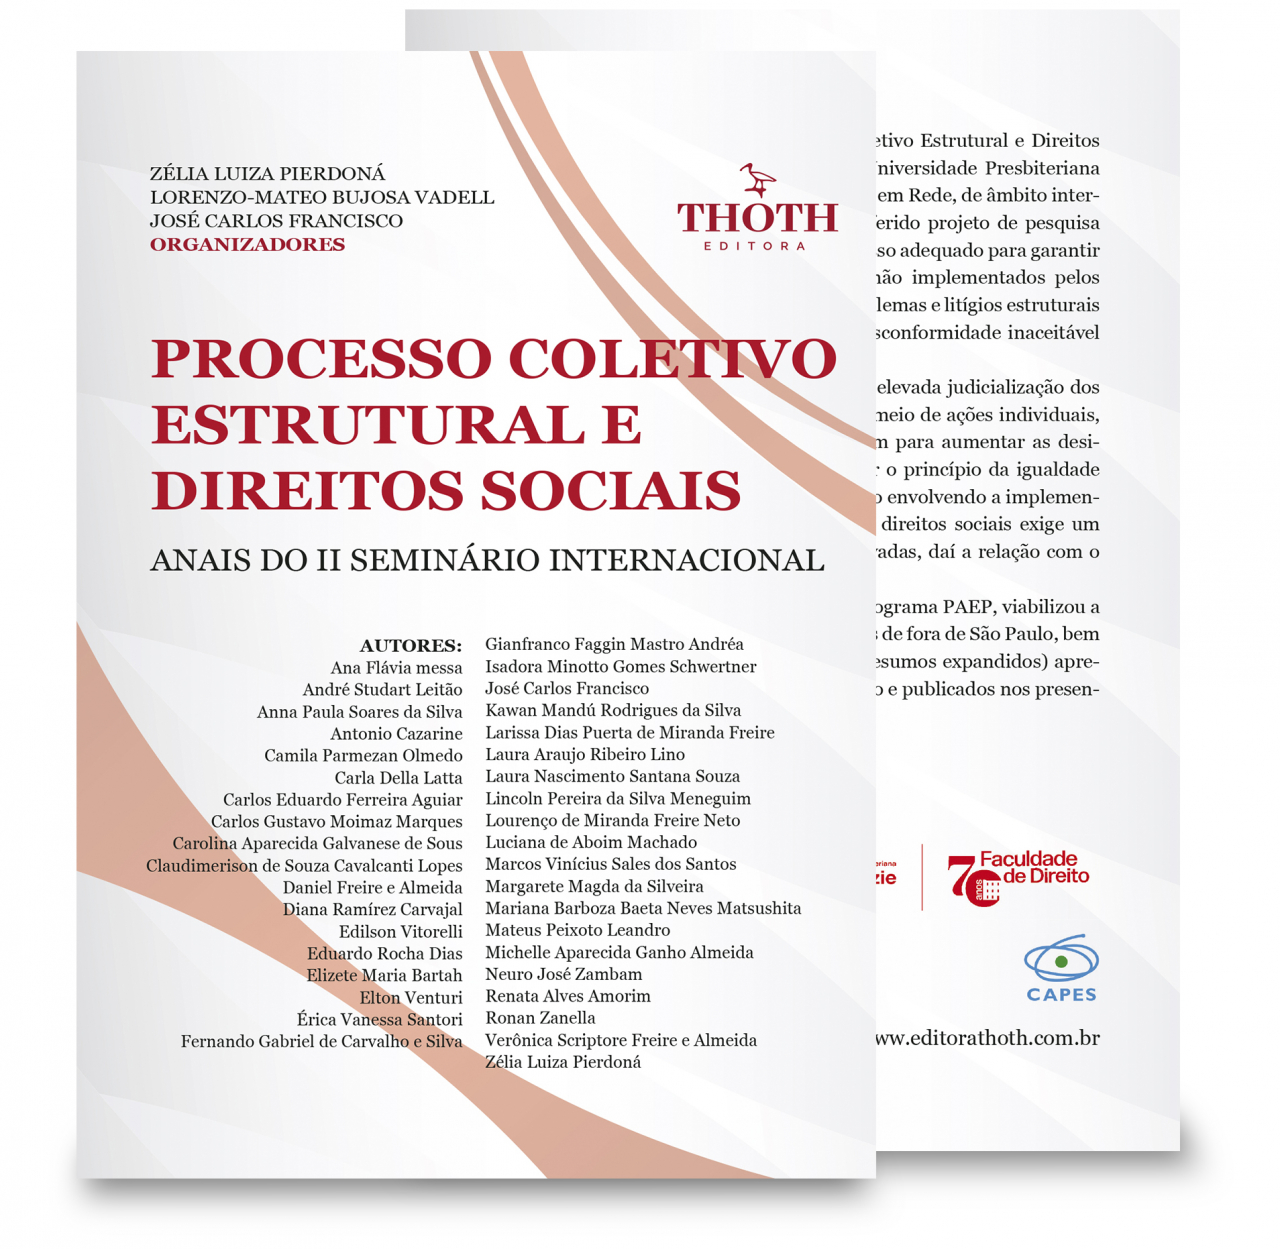 PDF) ANAIS DO VII SEMINÁRIO INTERNACIONAL EM PROMOÇÃO DA SAÚDE